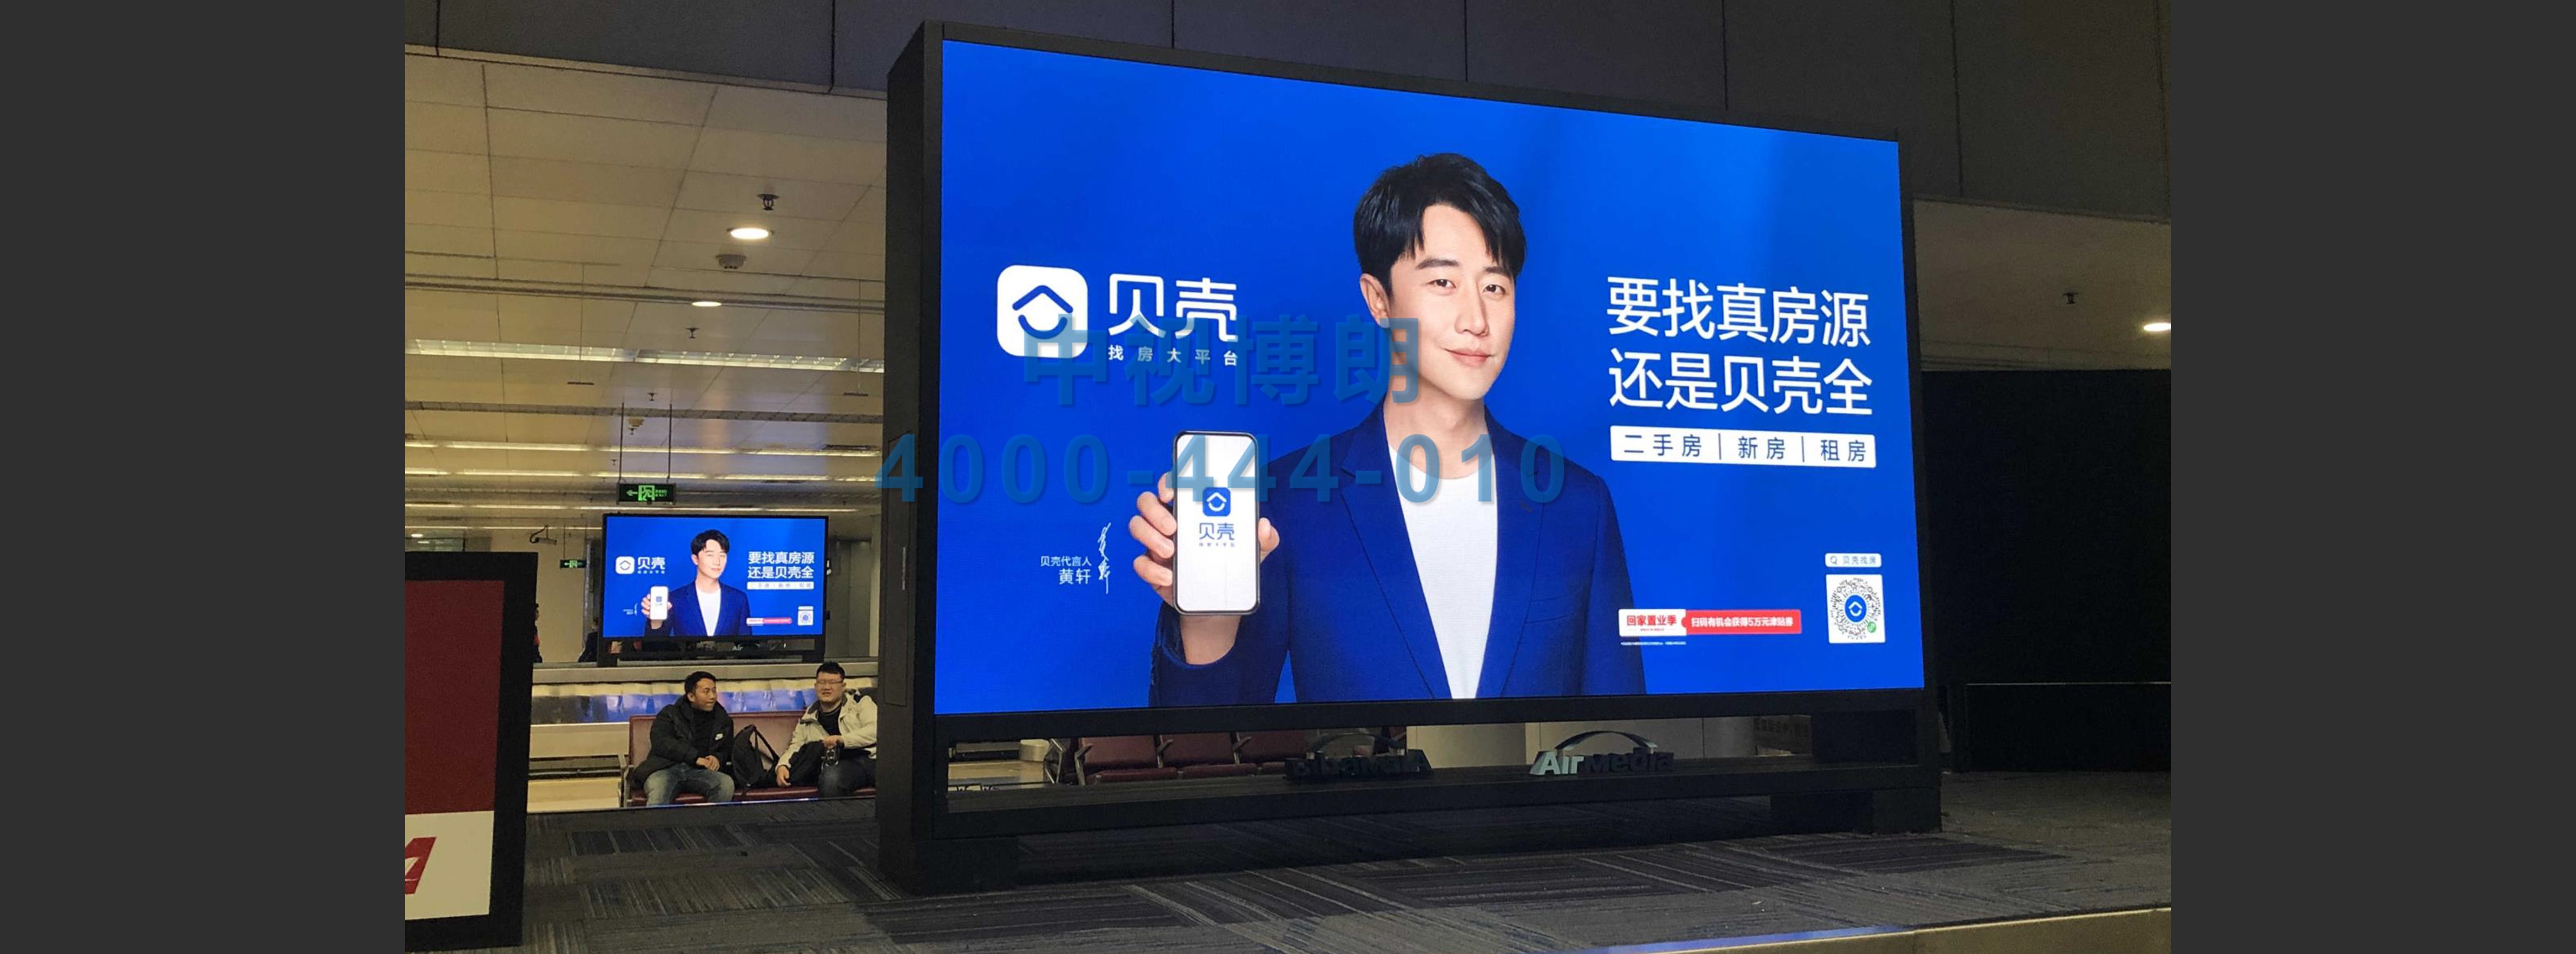 北京首都机场广告-T2国内国际到达行李厅26台刷屏